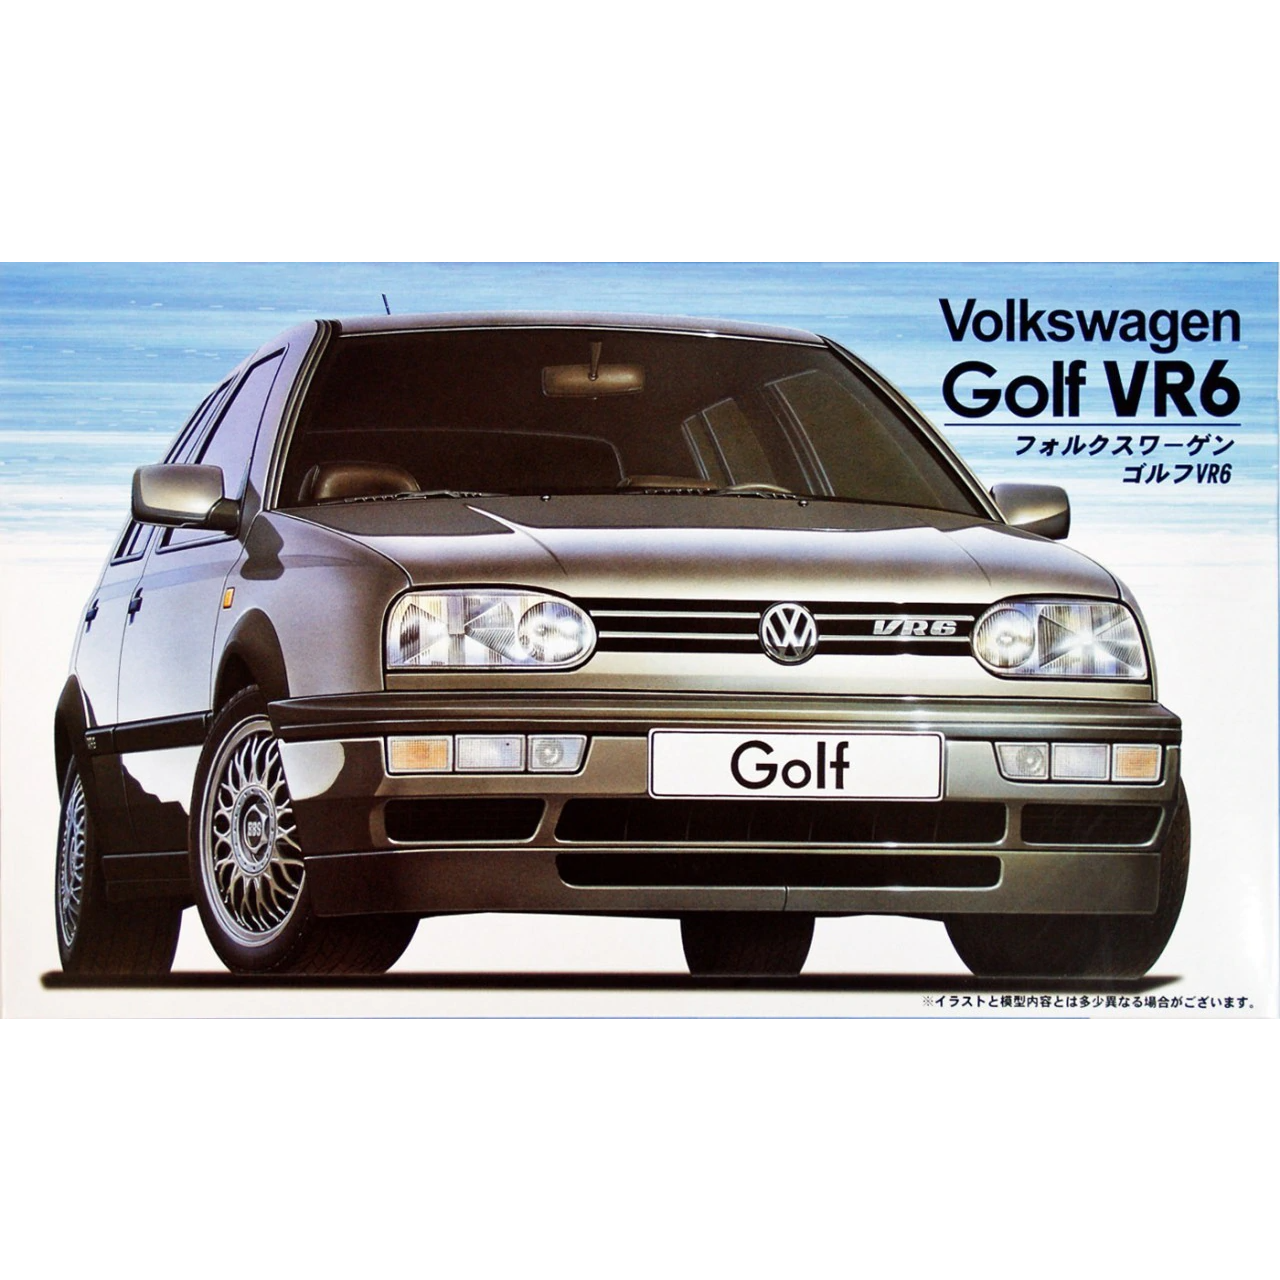 1991 Volkswagen Golf VR6 1/24 Model Car Kit #120935 by Fujimi